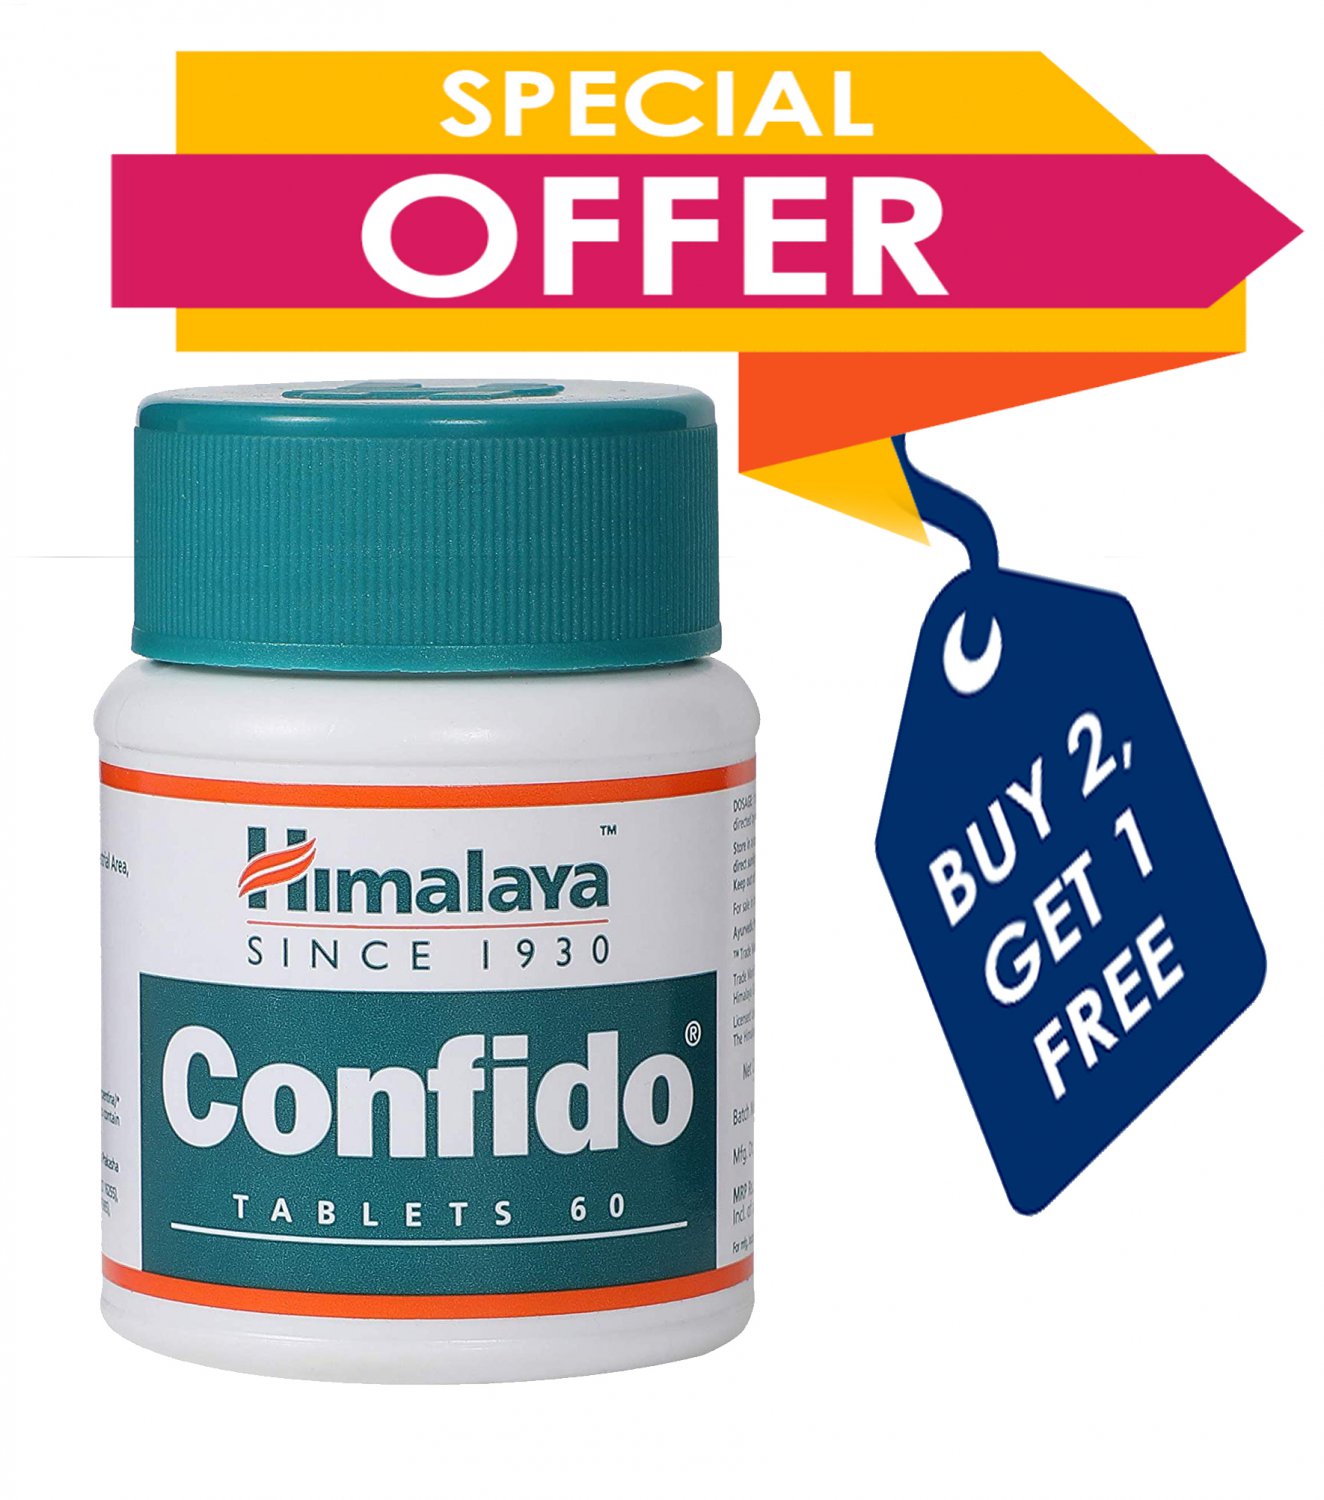 Himalaya CONFIDO Tablets* 60 Counts Augments SEMEN count, Buy 2 Get 1 Free